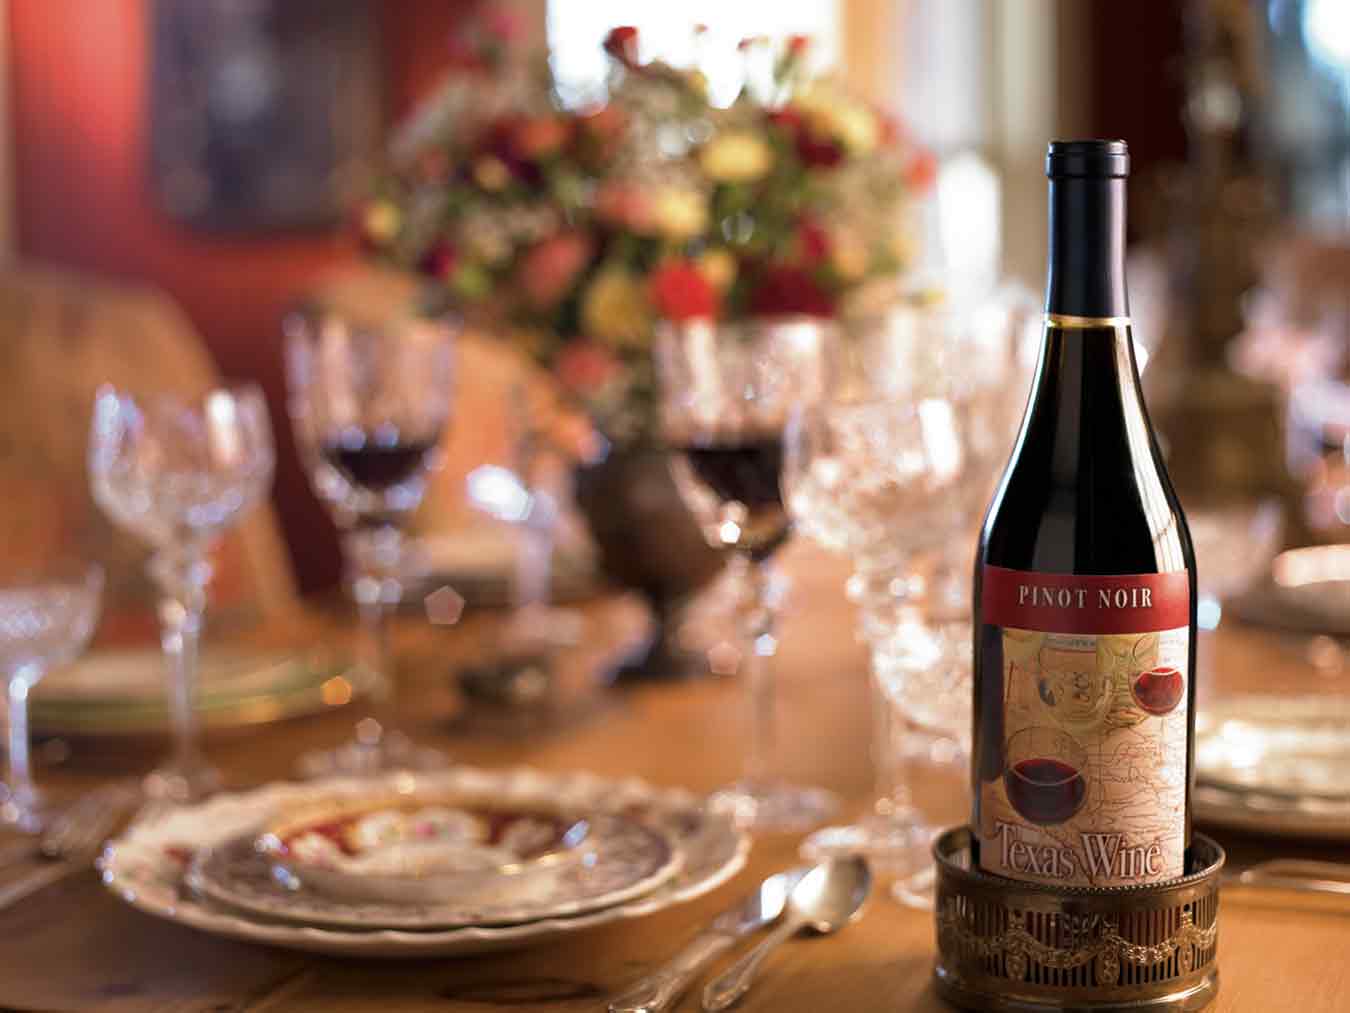 Wine bottle in table setting